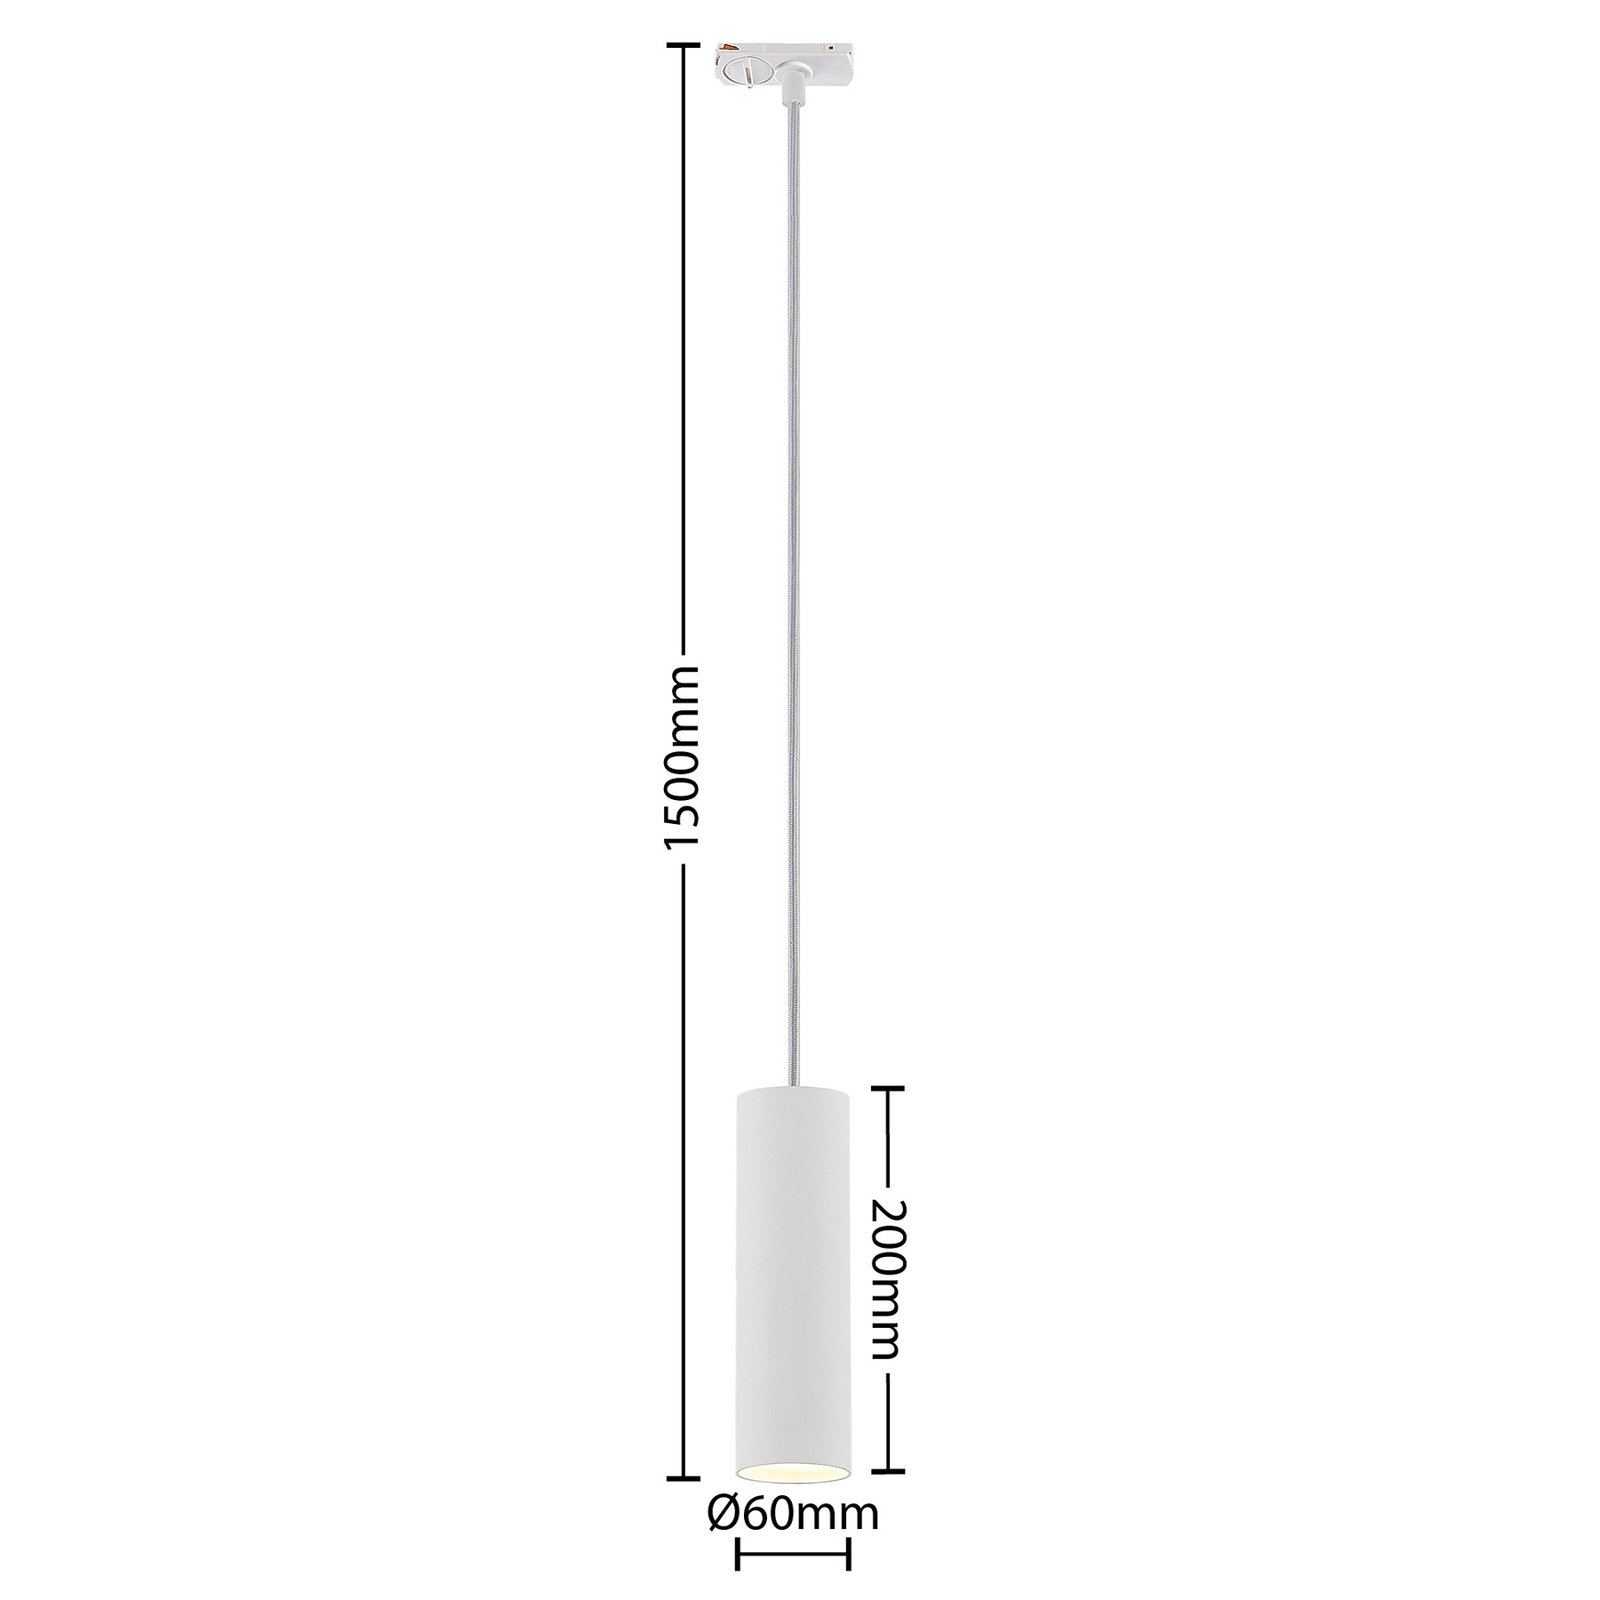 Lindby Linaro hanglamp 1-fase, 20 cm, wit